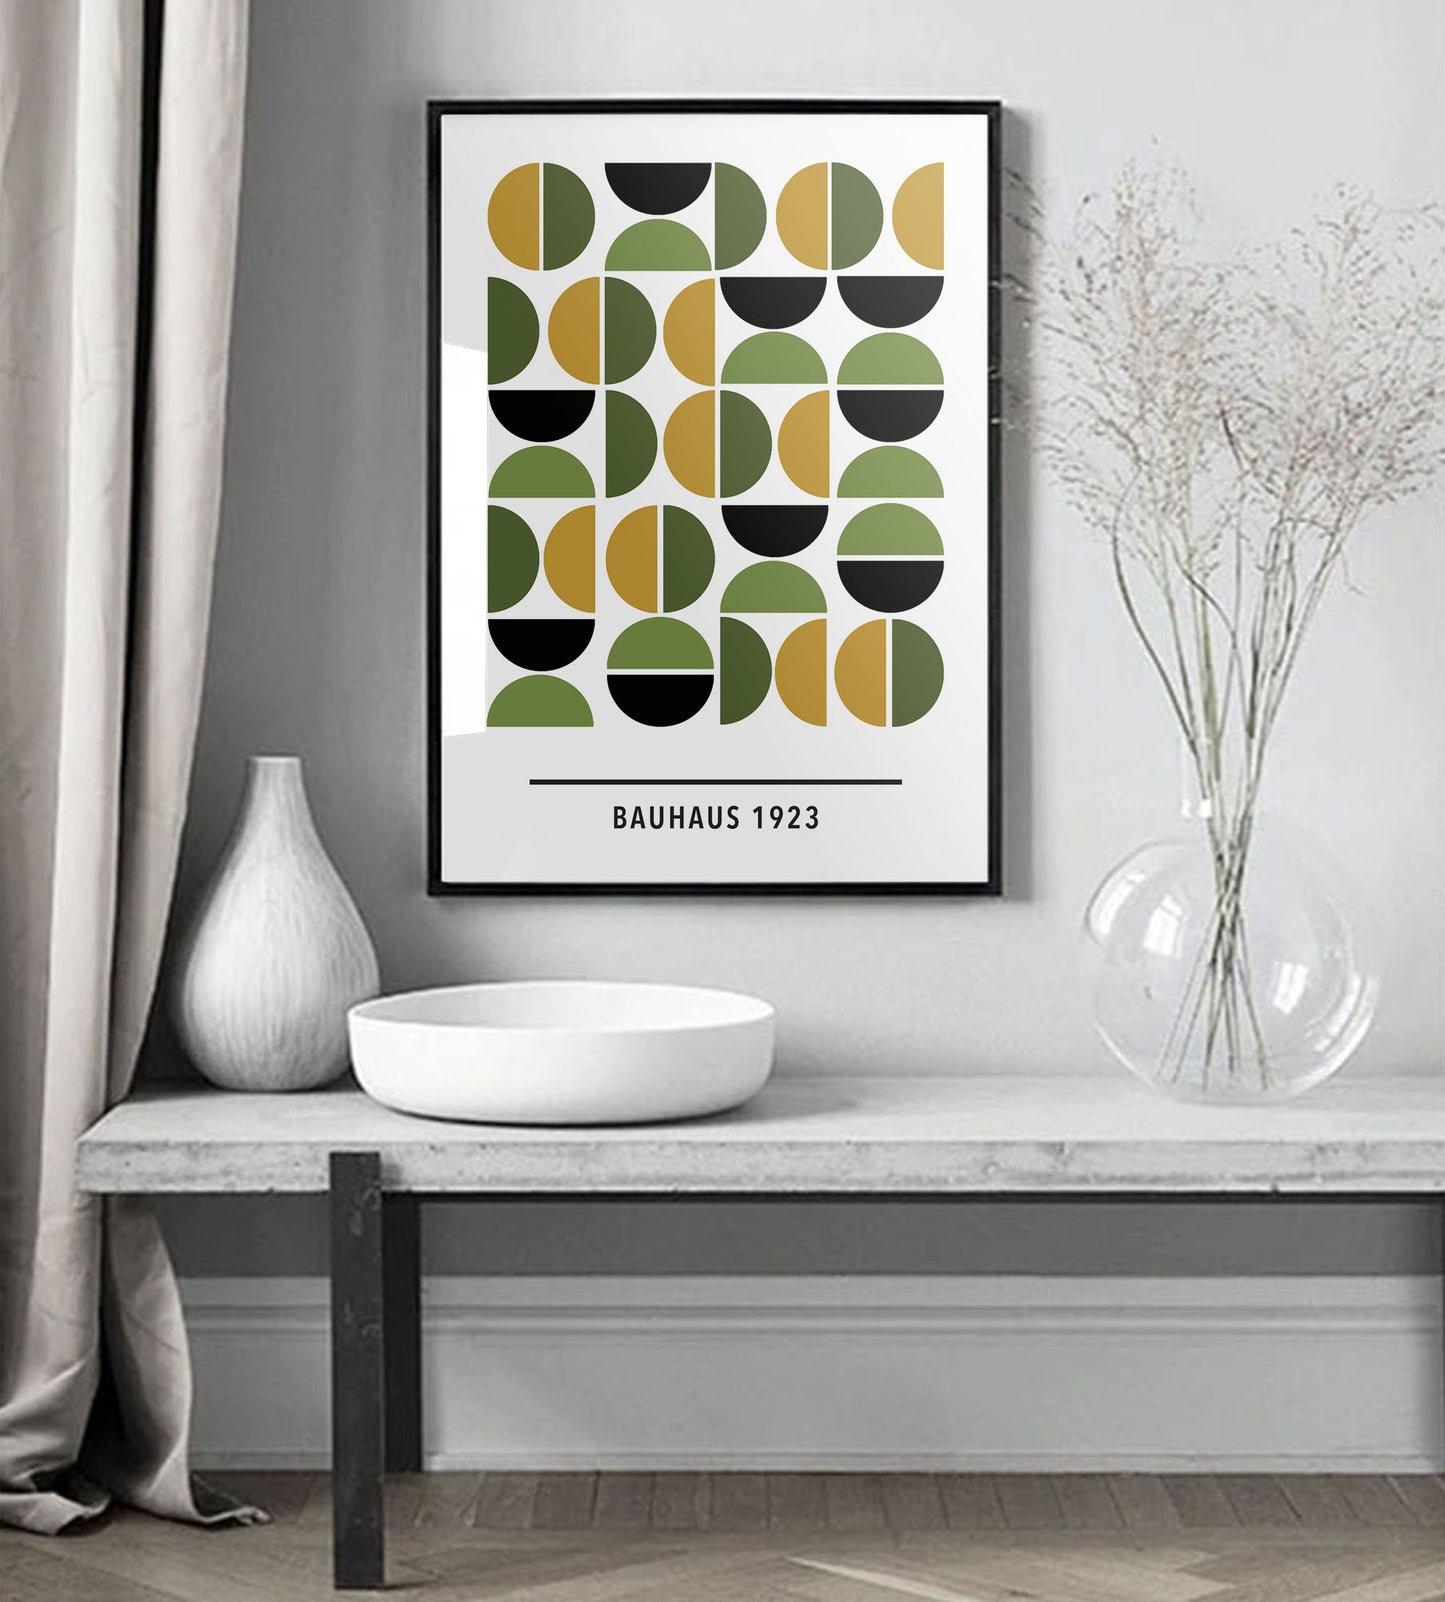 Grønn/gul Bauhaus kunsttrykk